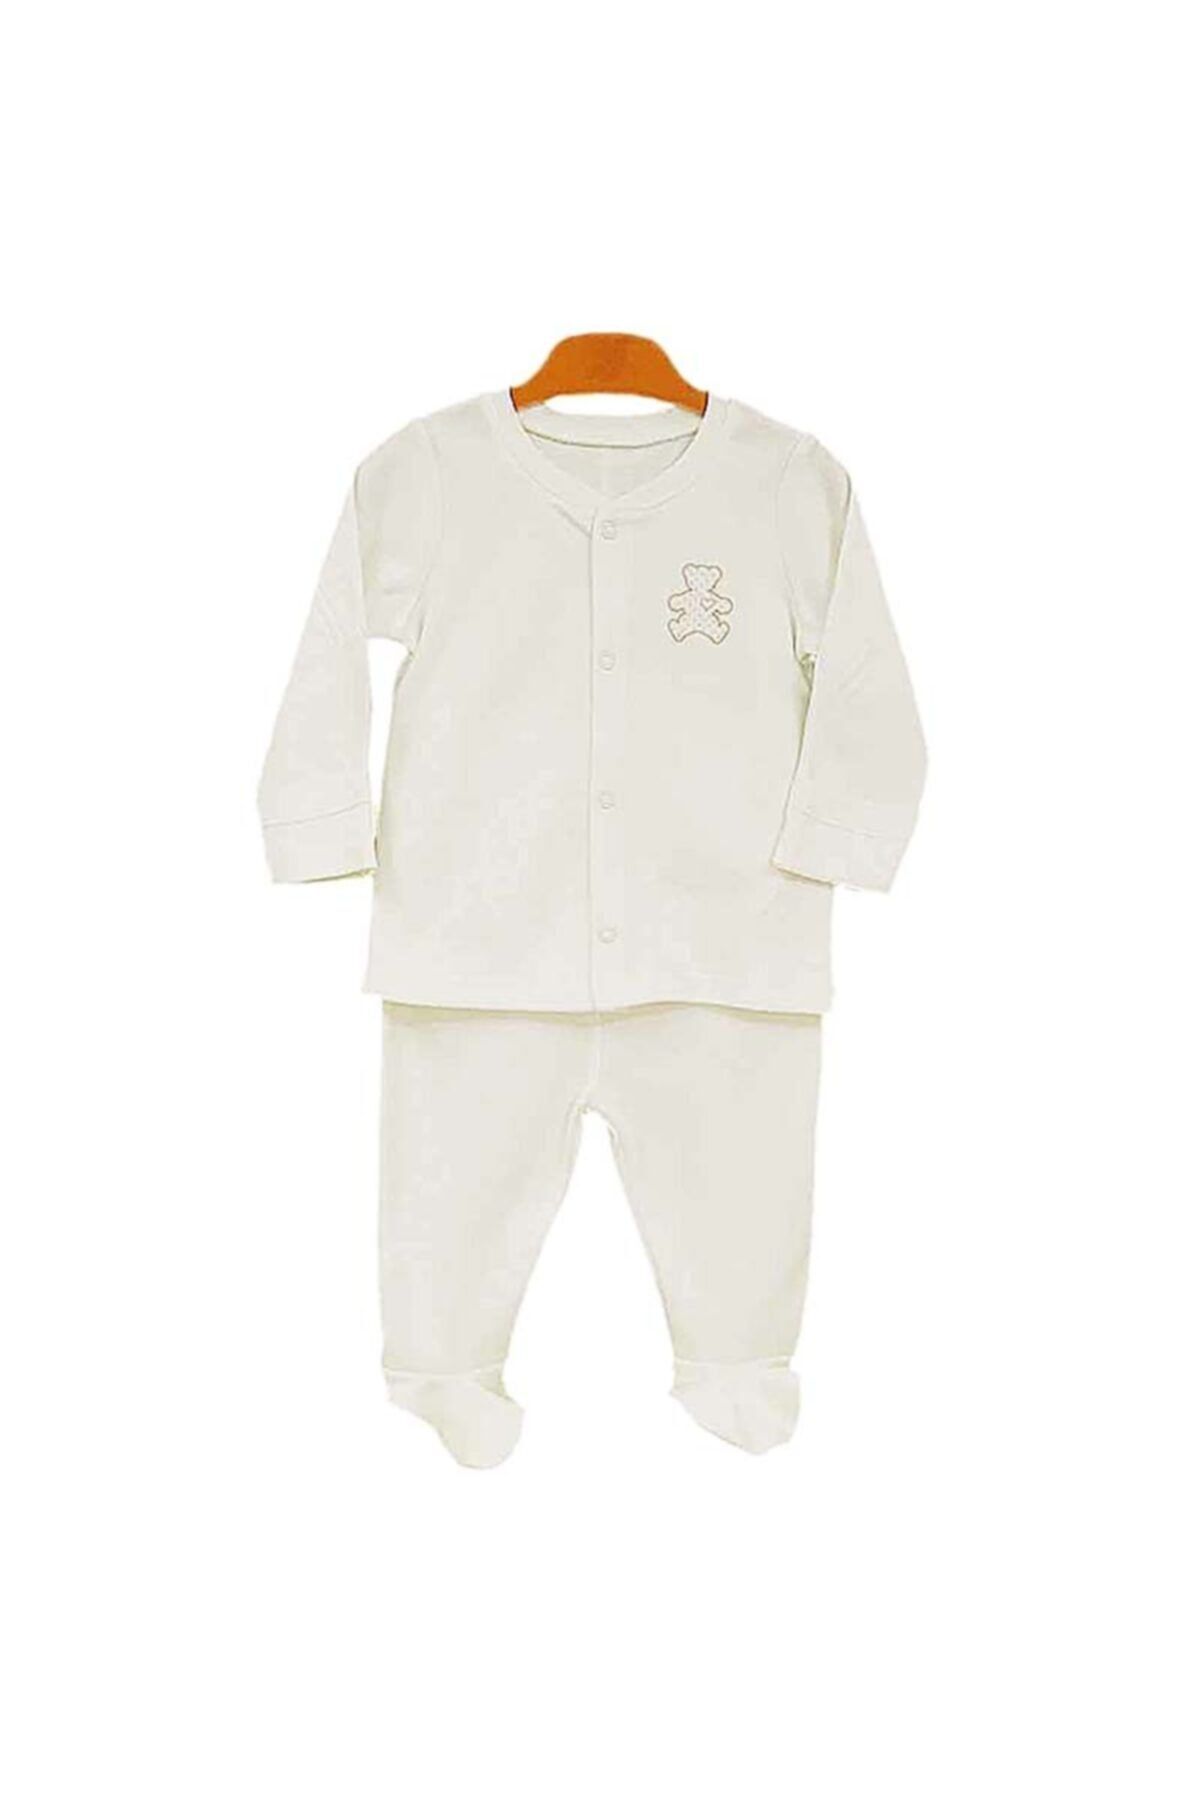 kitikate Unisex Bebek Ekru Organik Önden Çıtçıtlı Pijama Takımı 50cm